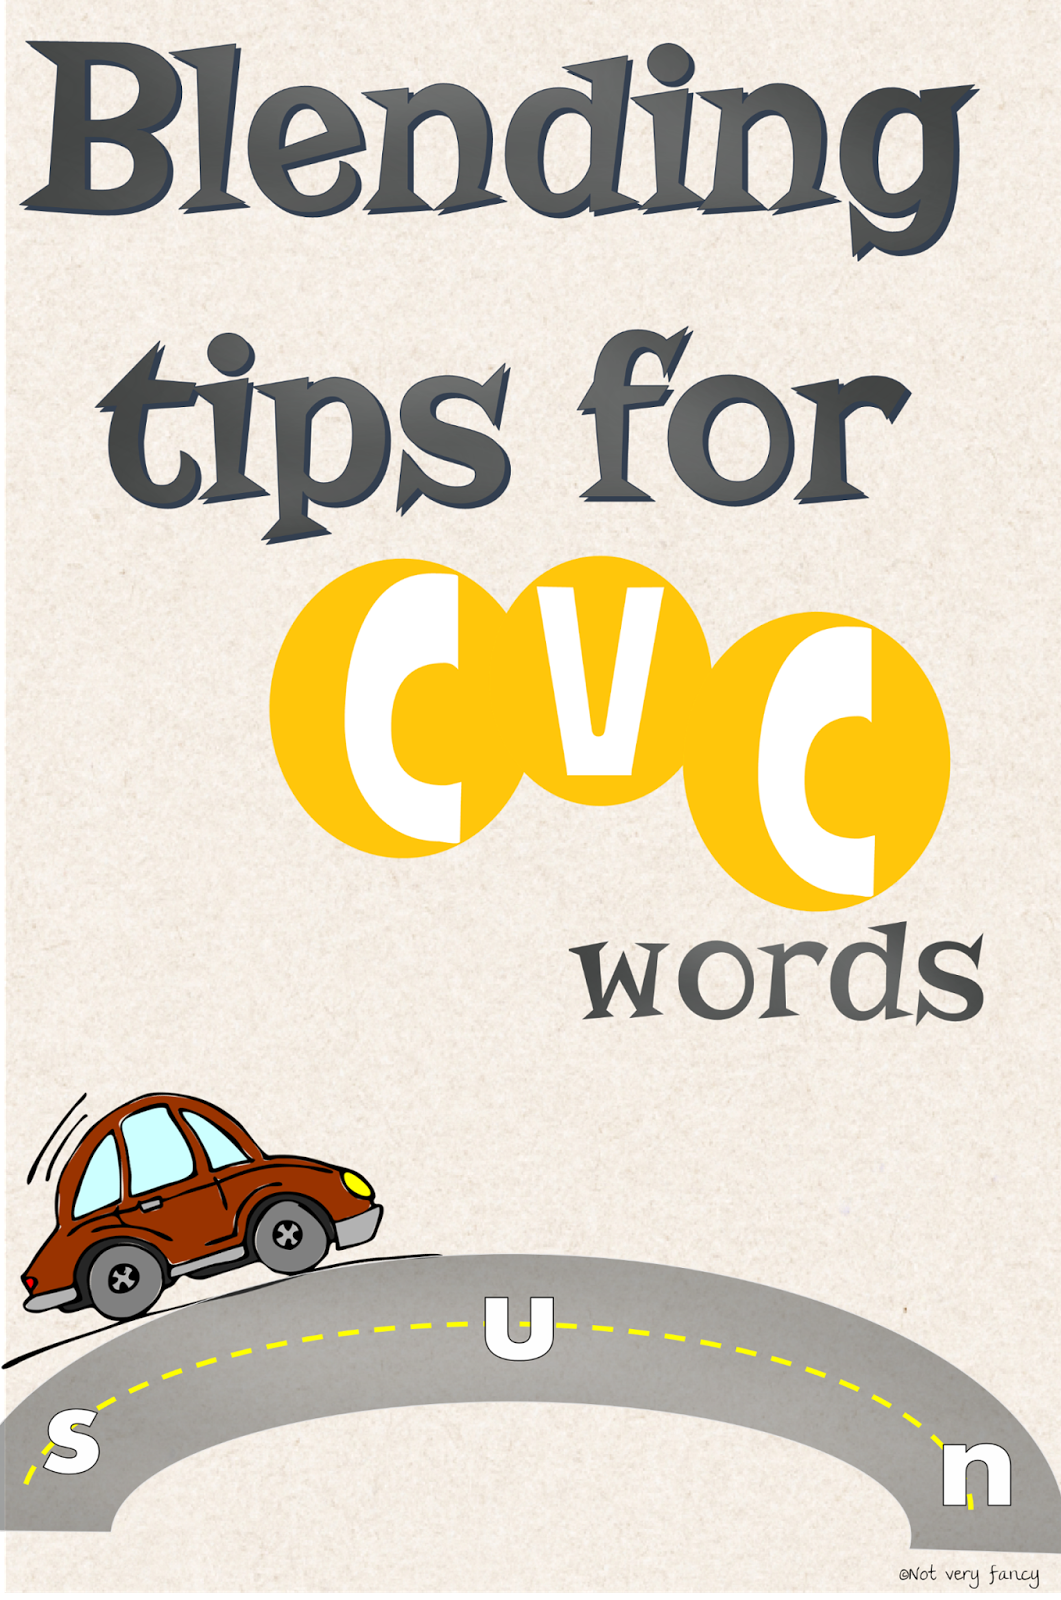 not-very-fancy-teaching-tips-for-blending-cvc-words